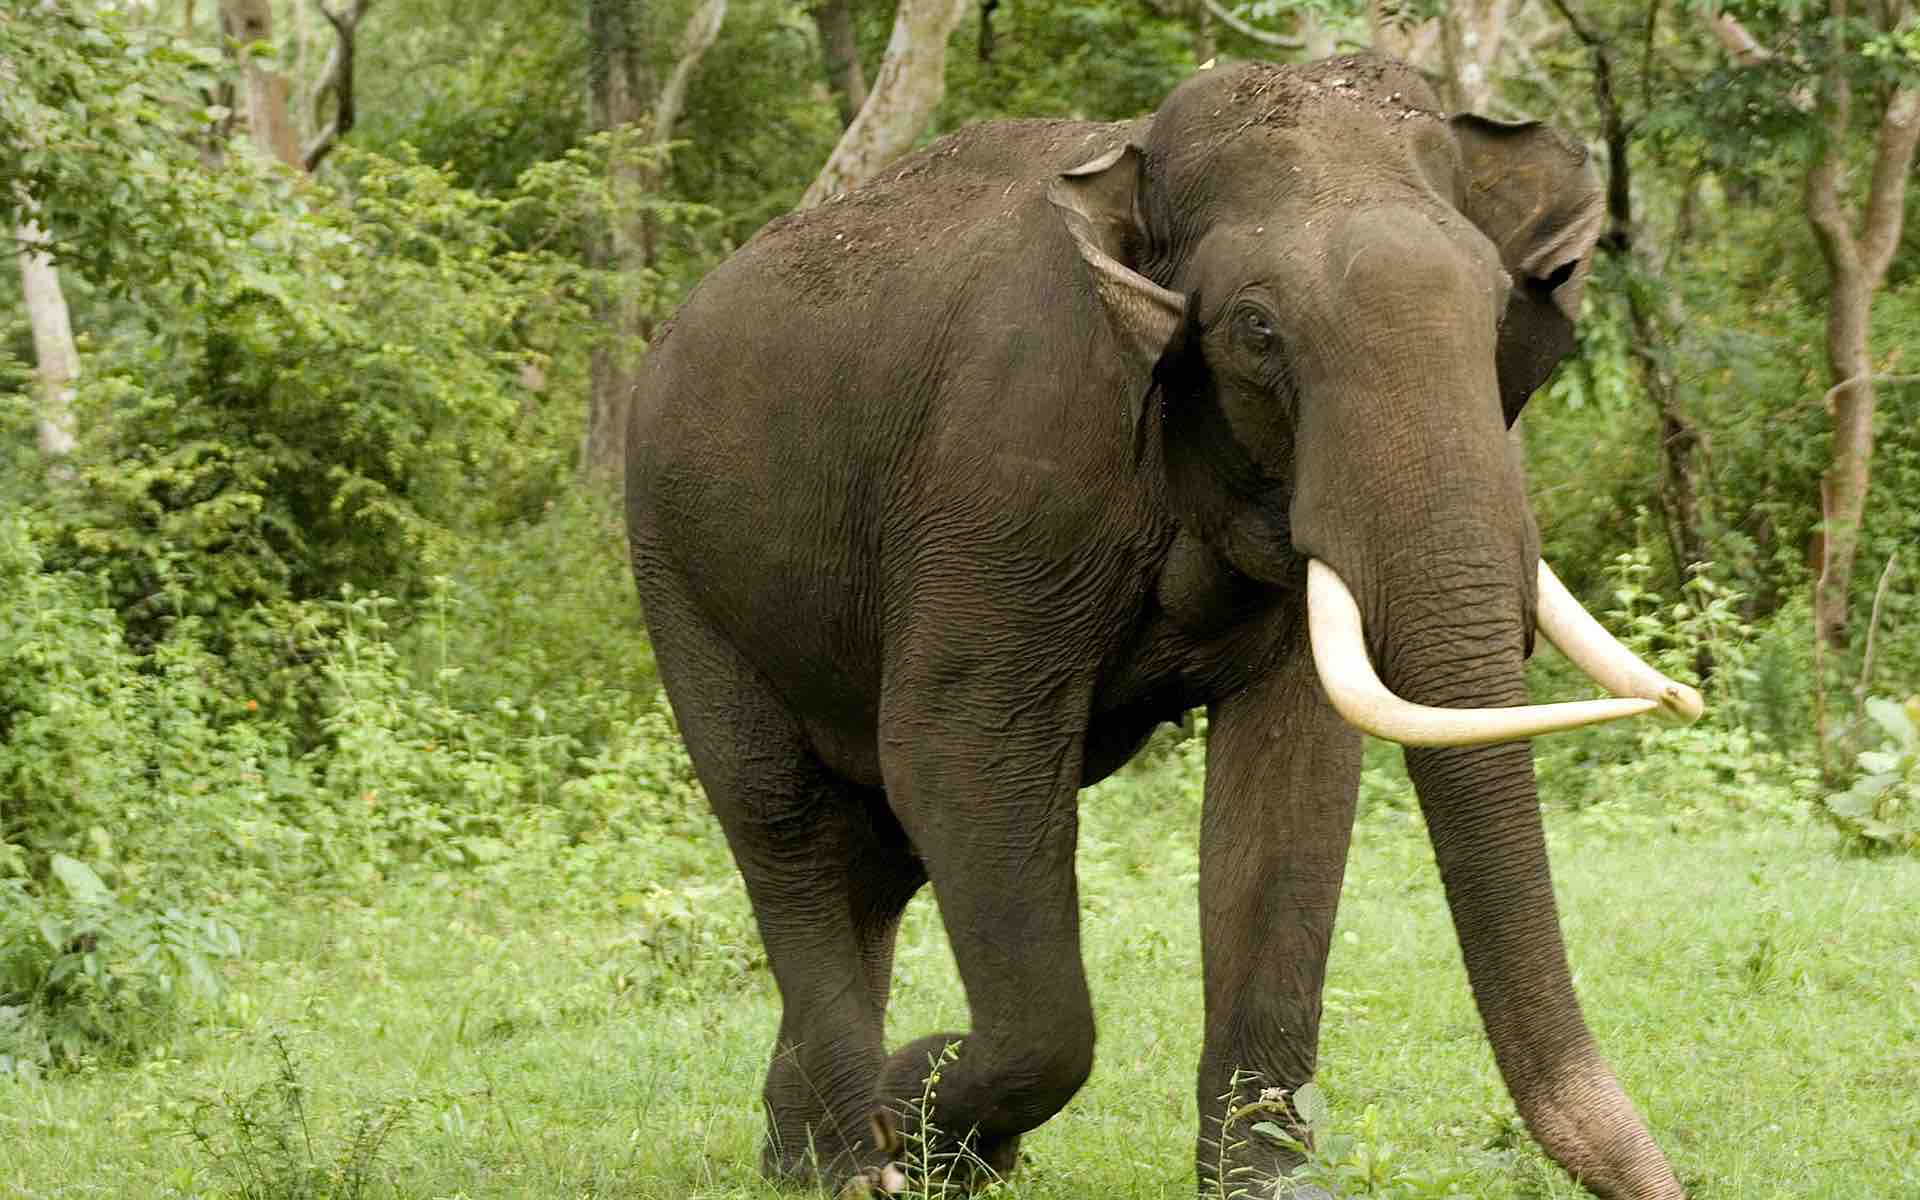 Zigya.com: The Elephant